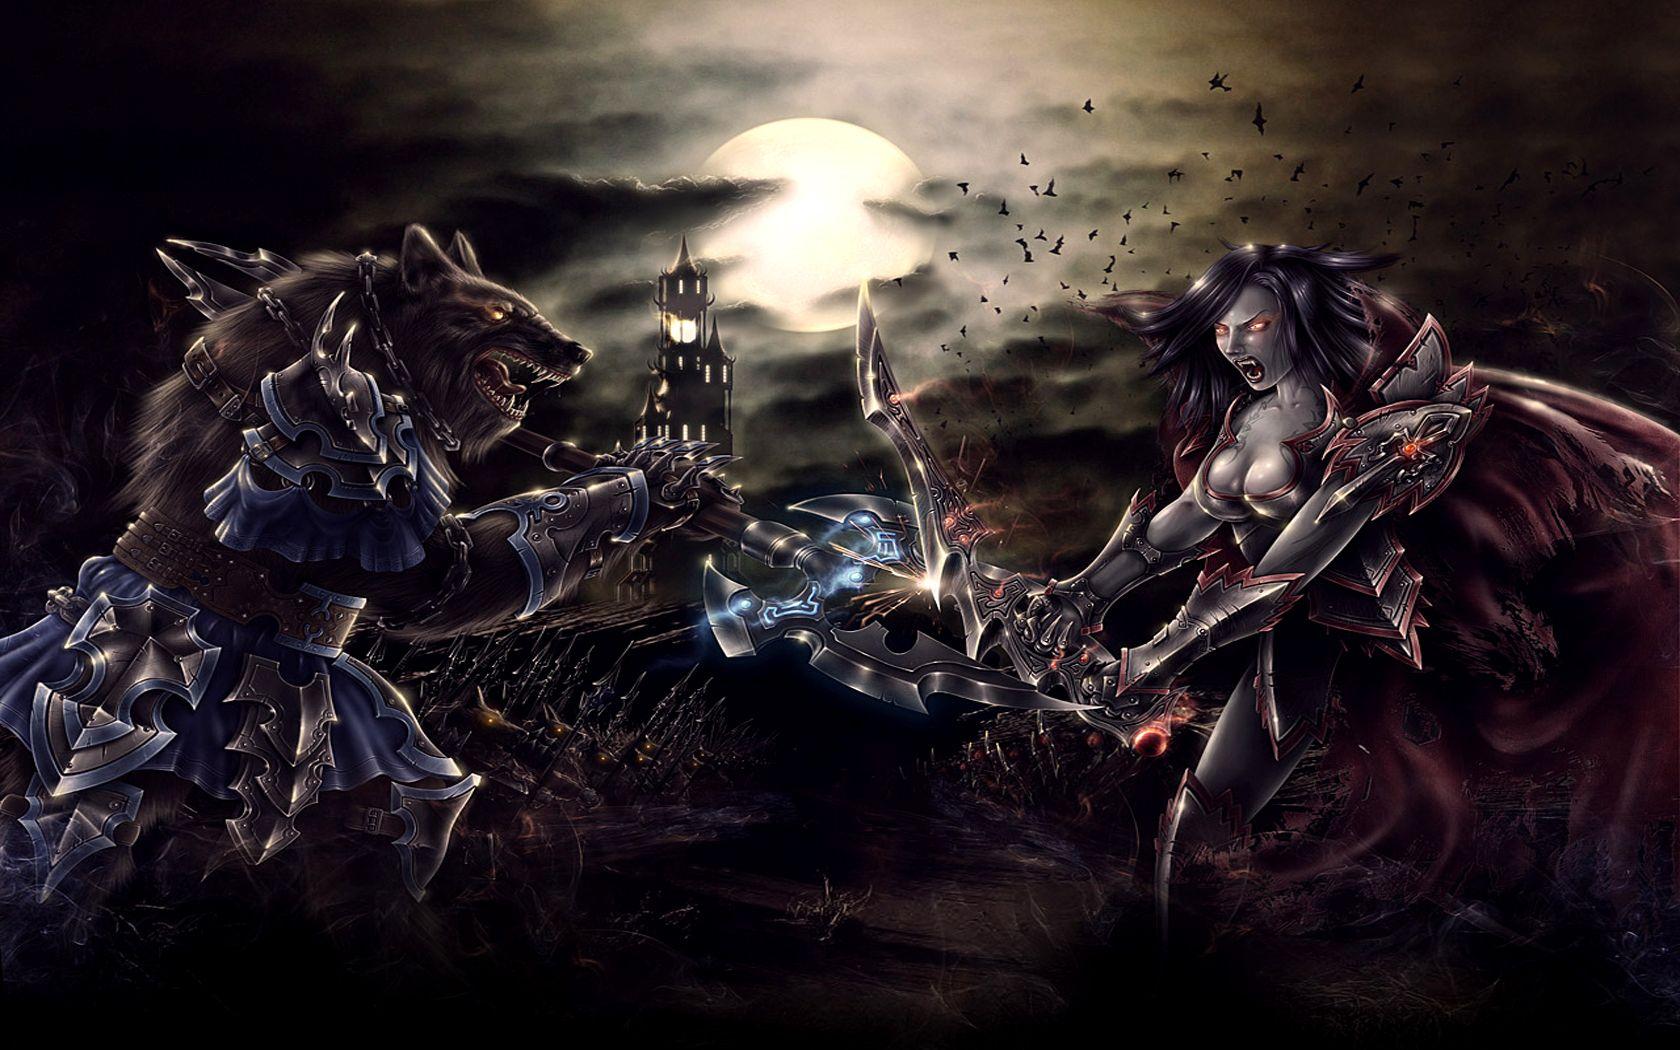 Screenshot 1 of MonstersGame: Vampires vs Werewolves Wallpaper